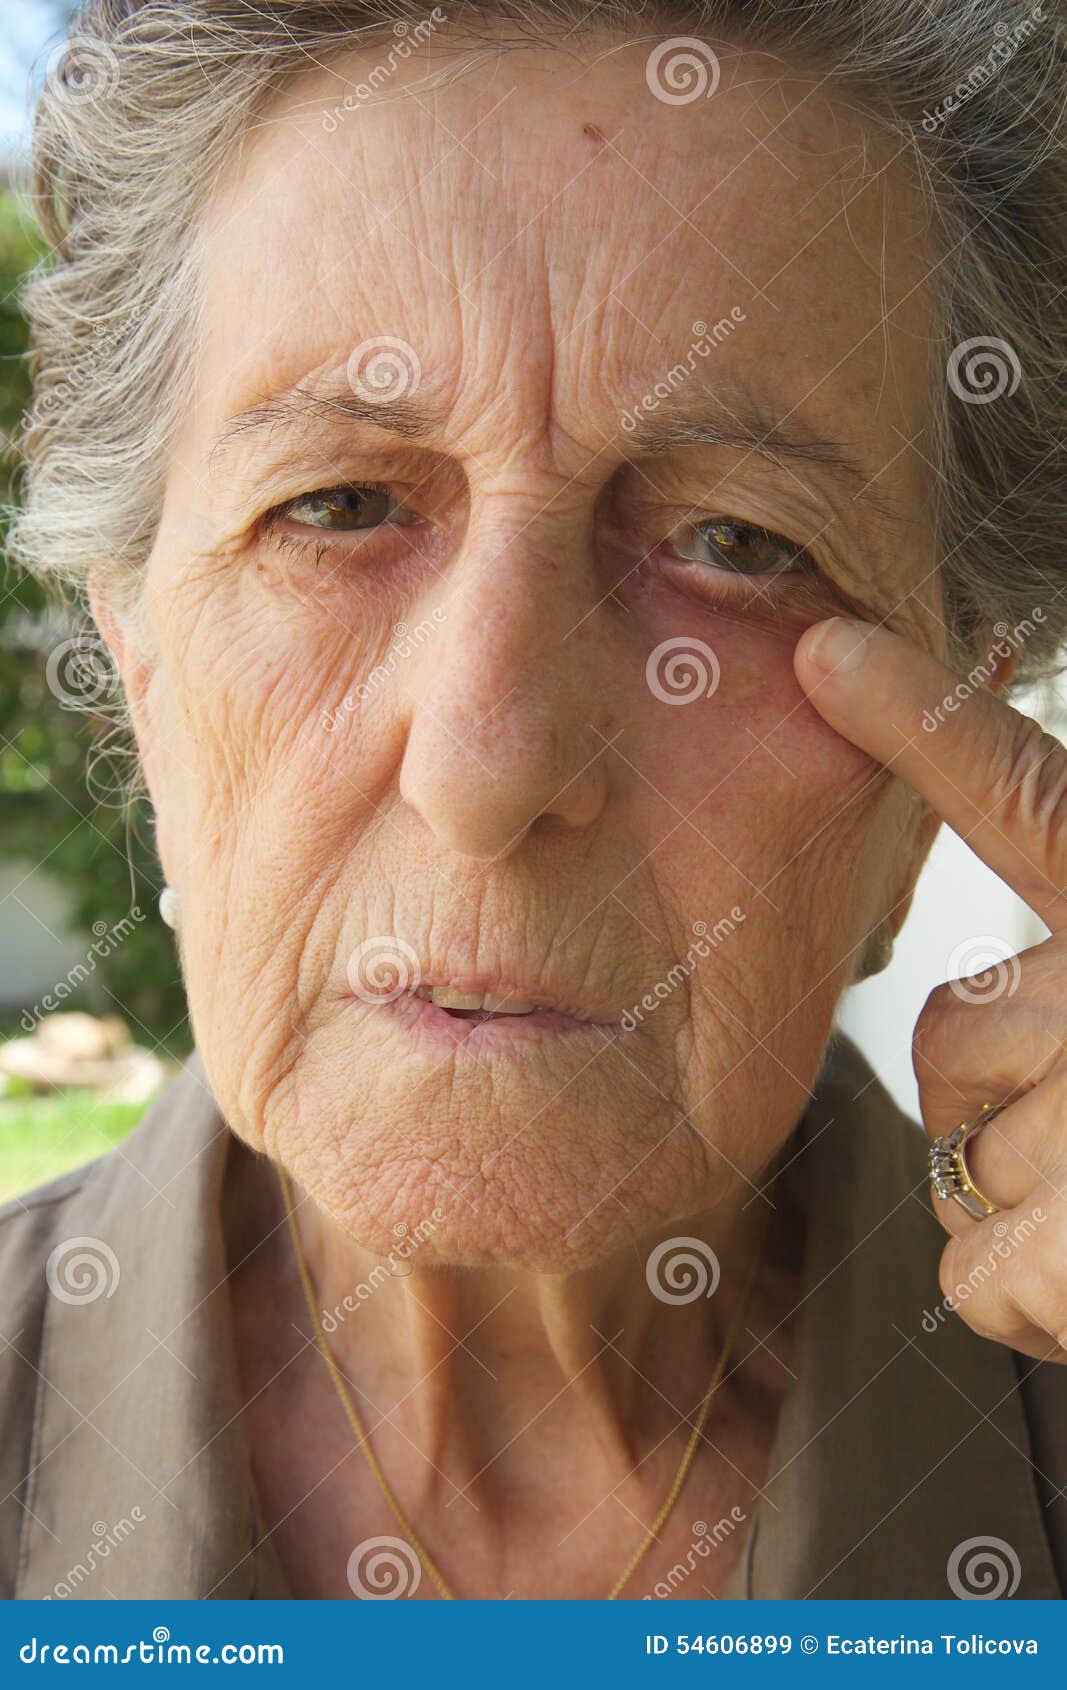 Мордочка сморщенная старушечья а глазки живые. Одухотворенные глаза пожилой женщины. Старая женщина с голубыми глазами.